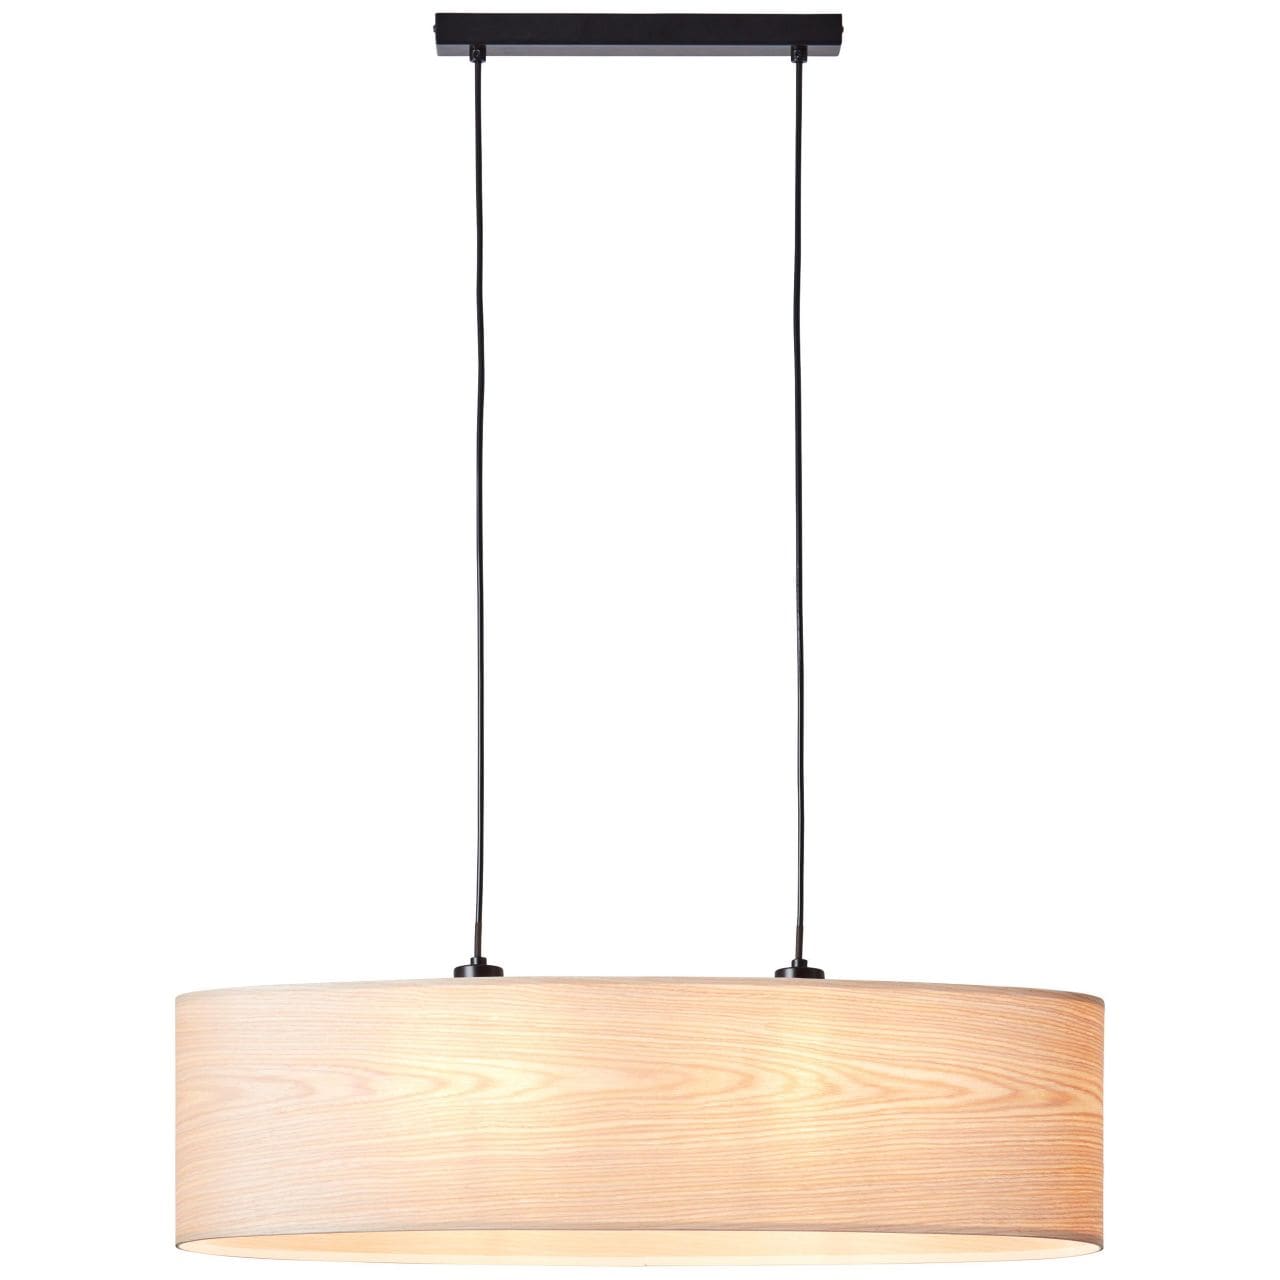 BRILLIANT Lampe, Marktkauf E27, der online einstellbar oval 2flg in holz bestellen A60, kürzbar Kabel bei Pendelleuchte Romm 52W, 2x Höhe / hell/schwarz